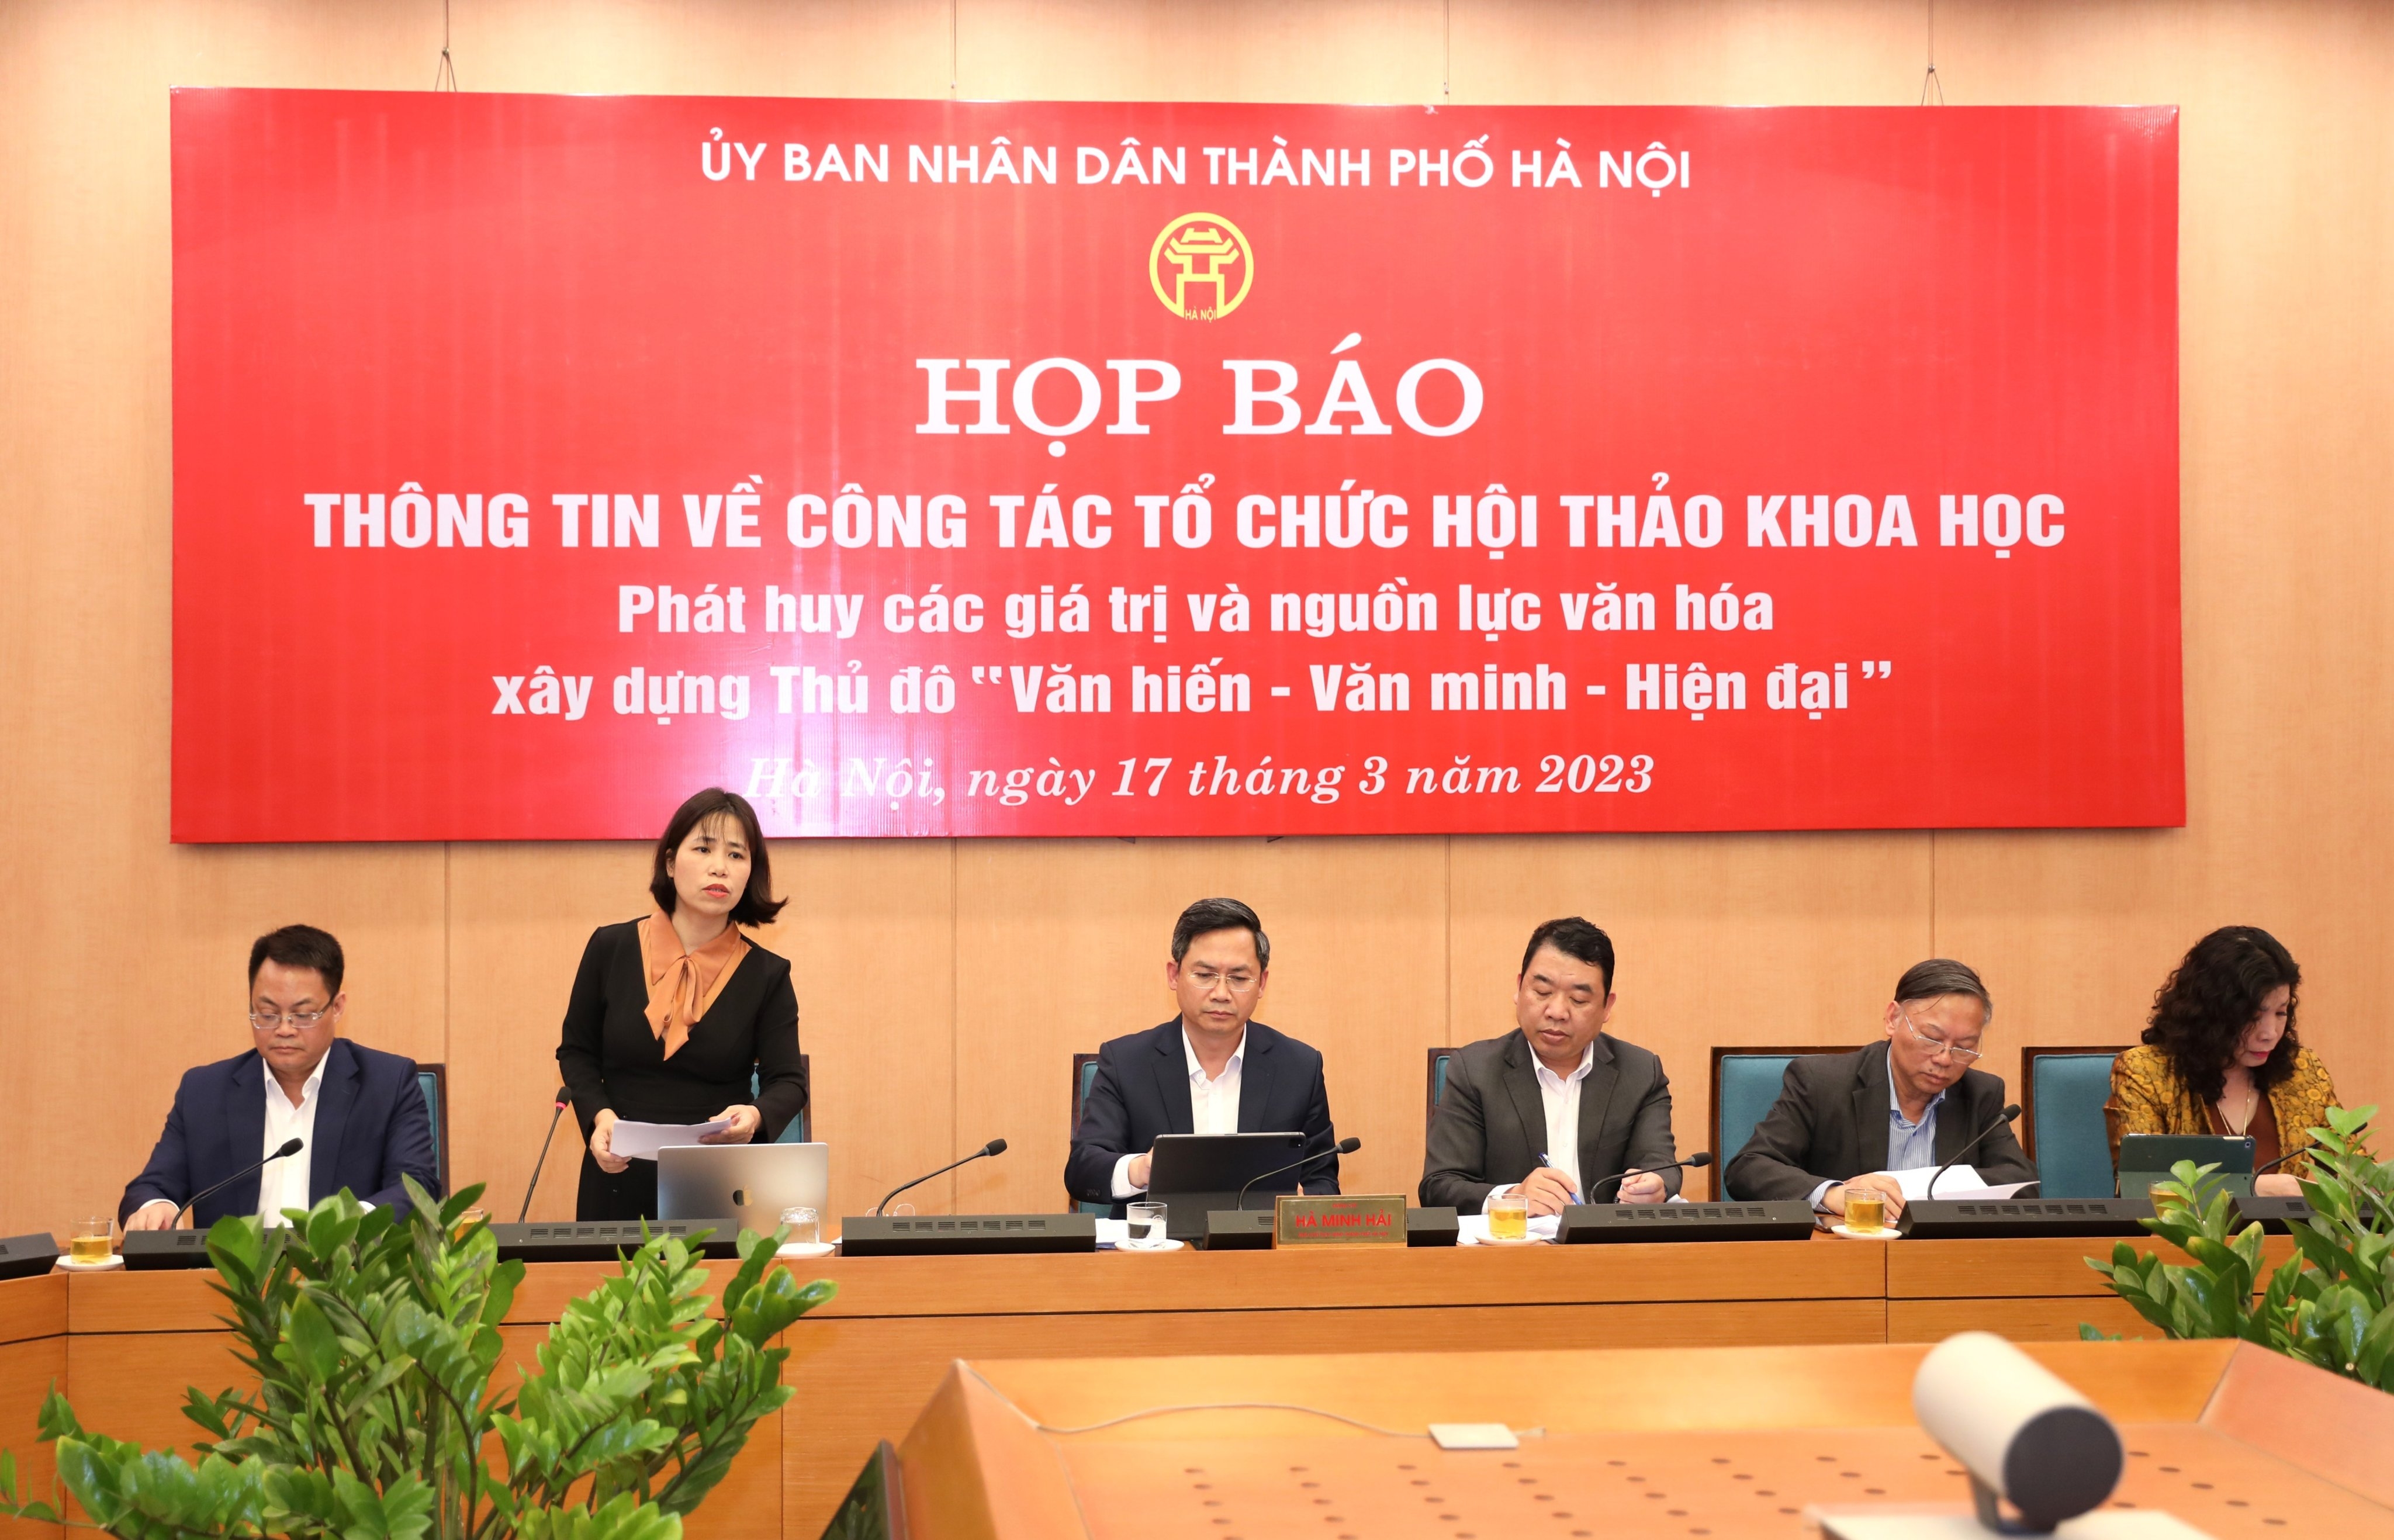 TS Nguyễn Thị Diễm Hằng, Phó Viện trưởng Viện Nghiên cứu phát triển kinh tế - xã hội Hà Nội thông tin tại buổi họp báo.